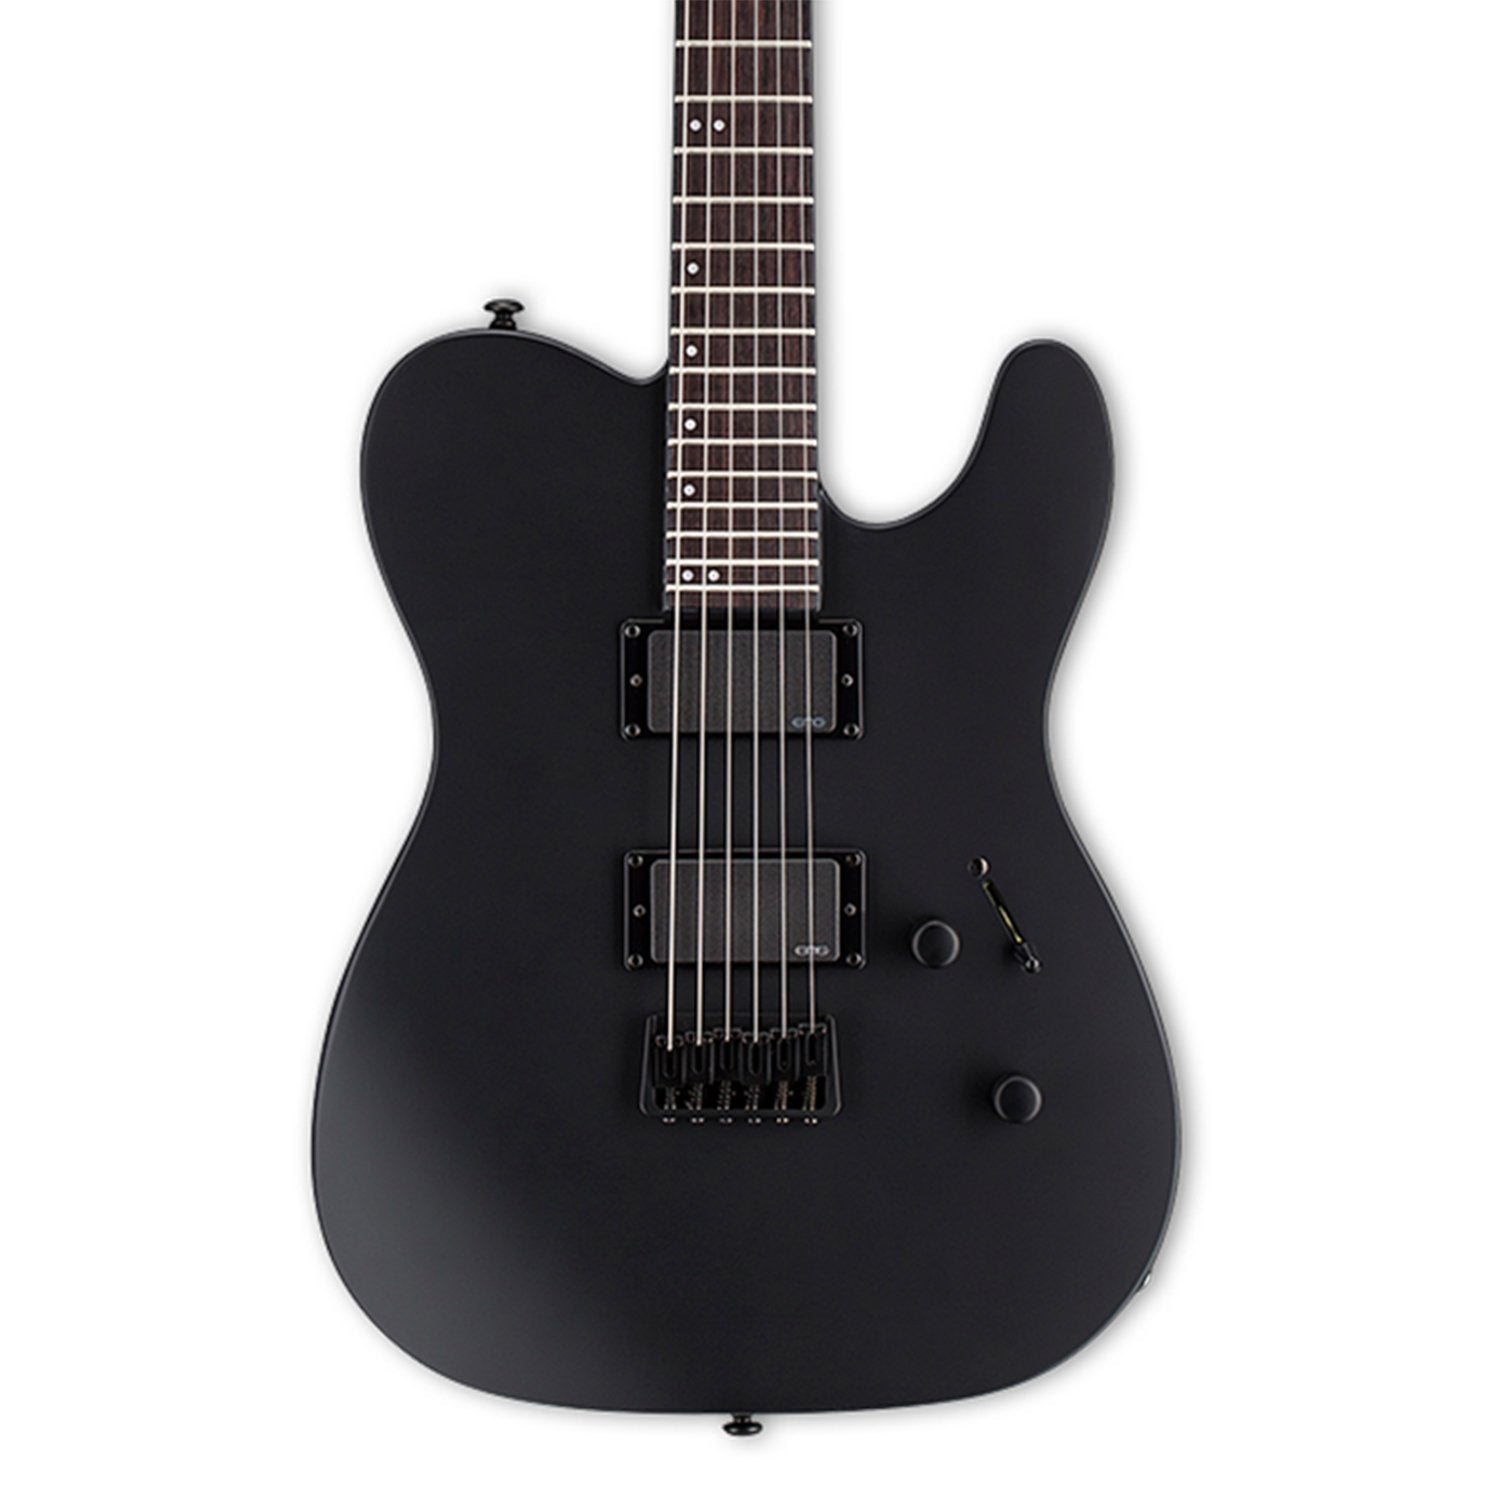 ESP LTD TE-401 Electric Guitar - Black Satin | Zoso Music Sdn Bhd